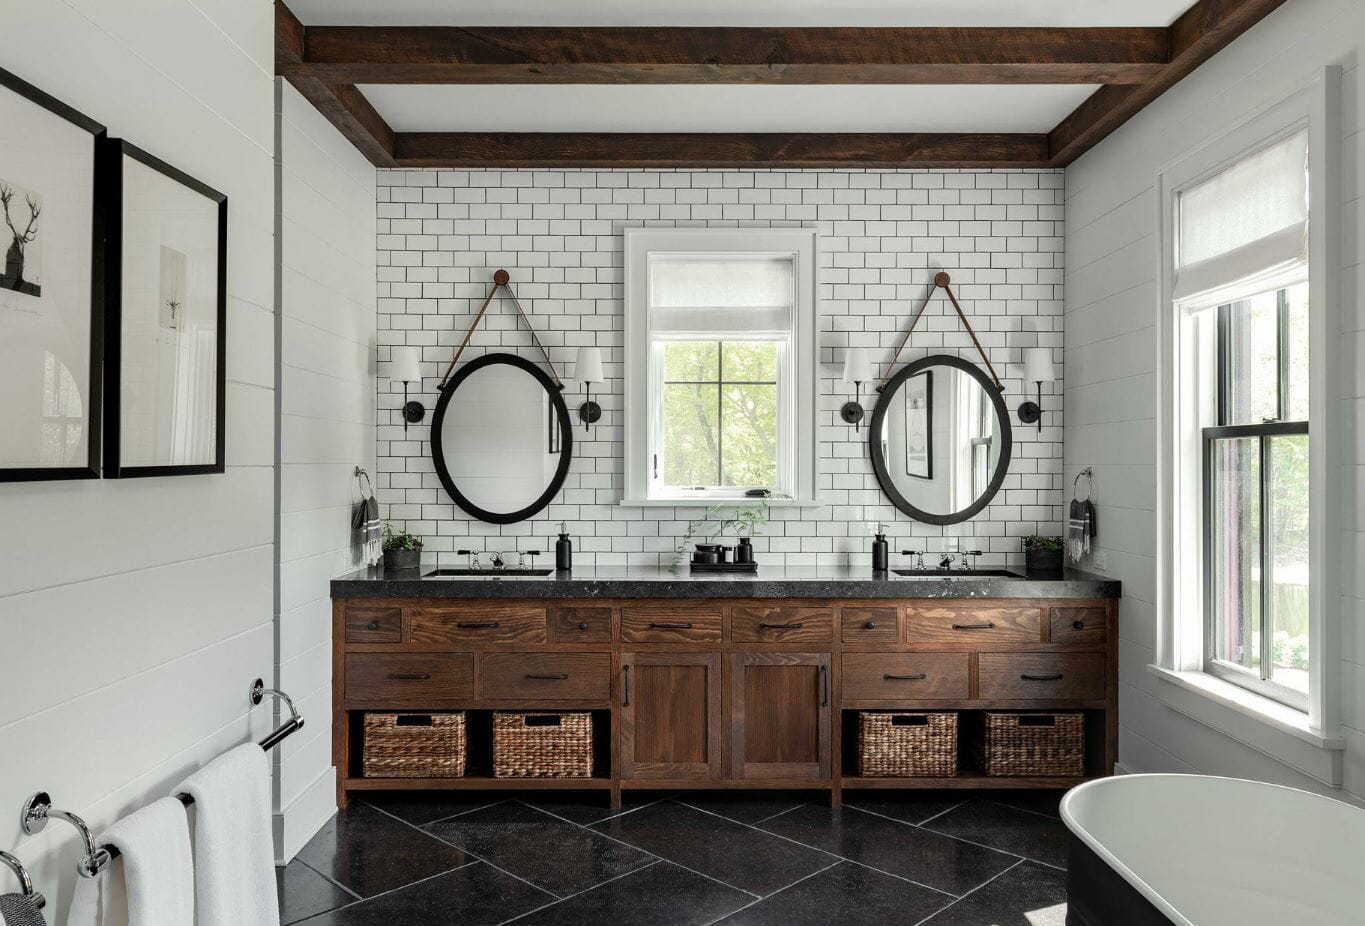 2019 bathroom trends modern farmhouse